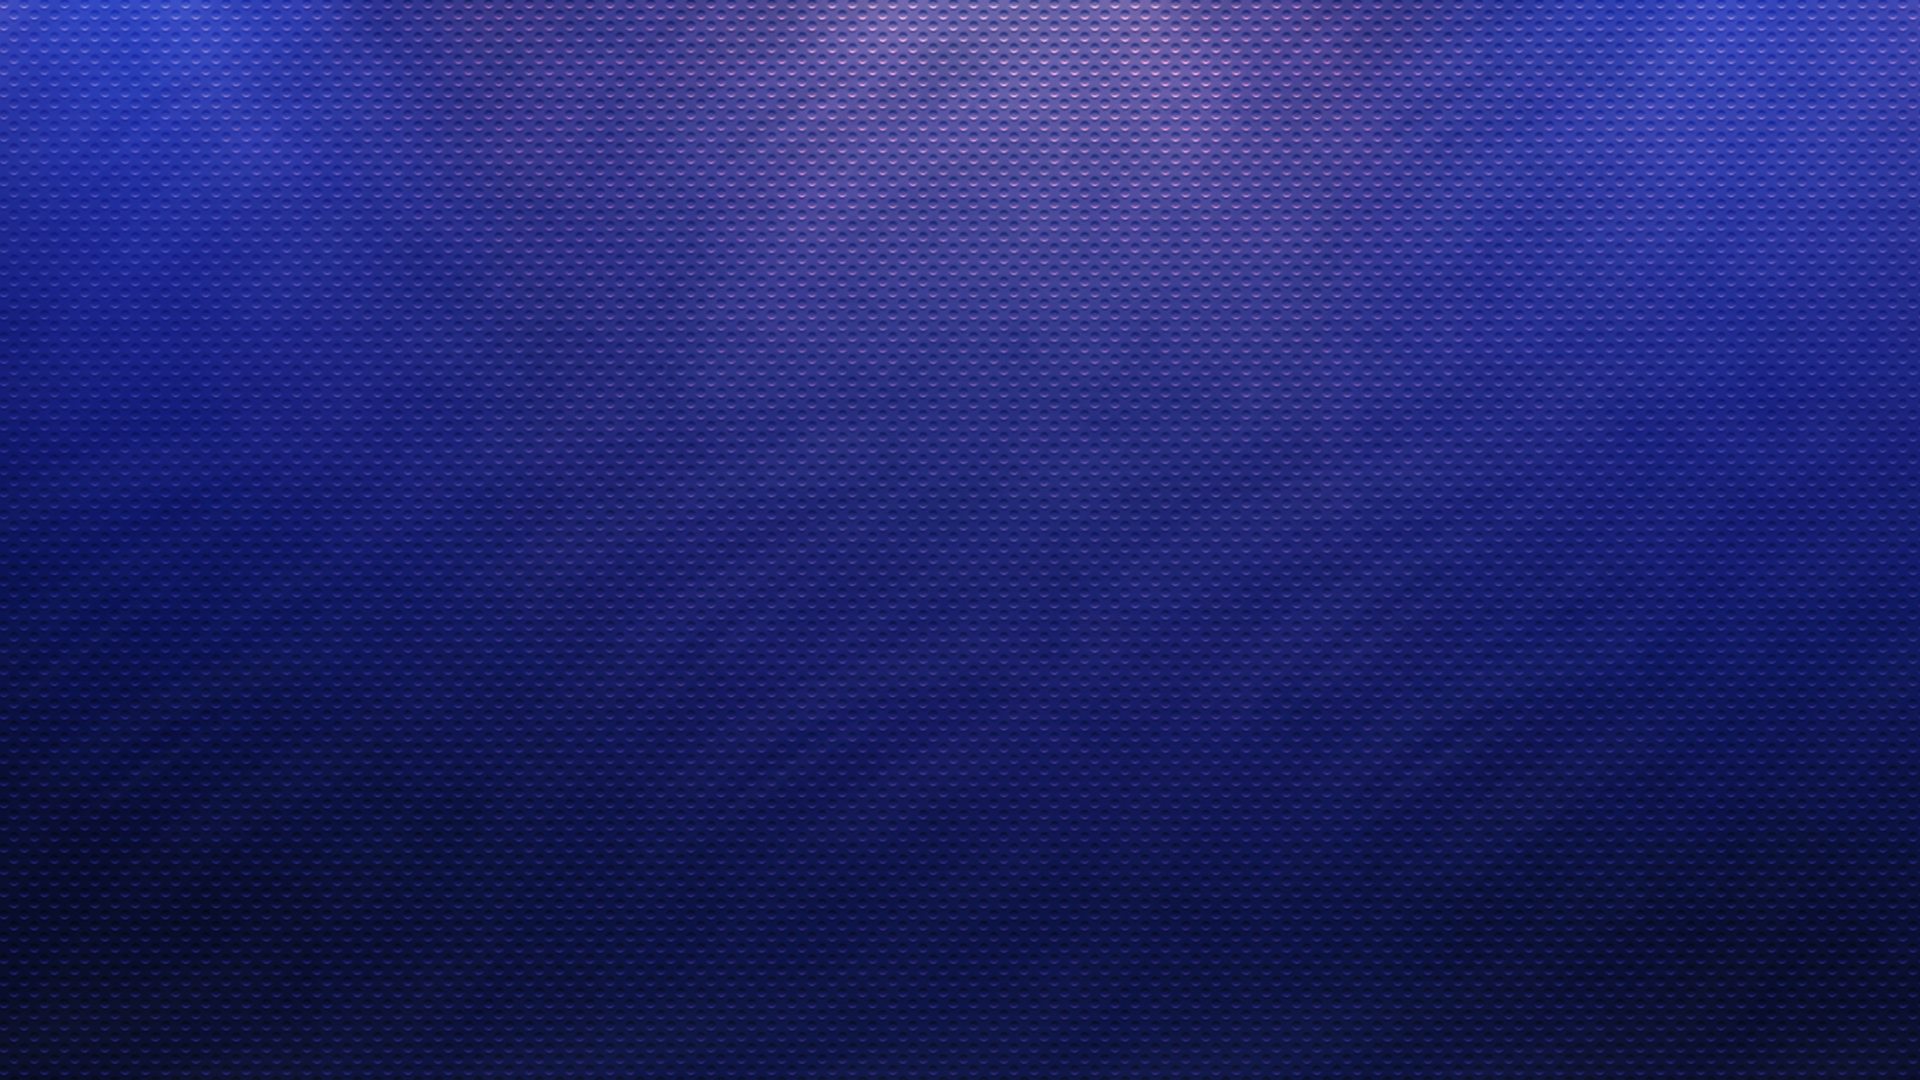 Violet Pattern Blue Lights 1920x1080